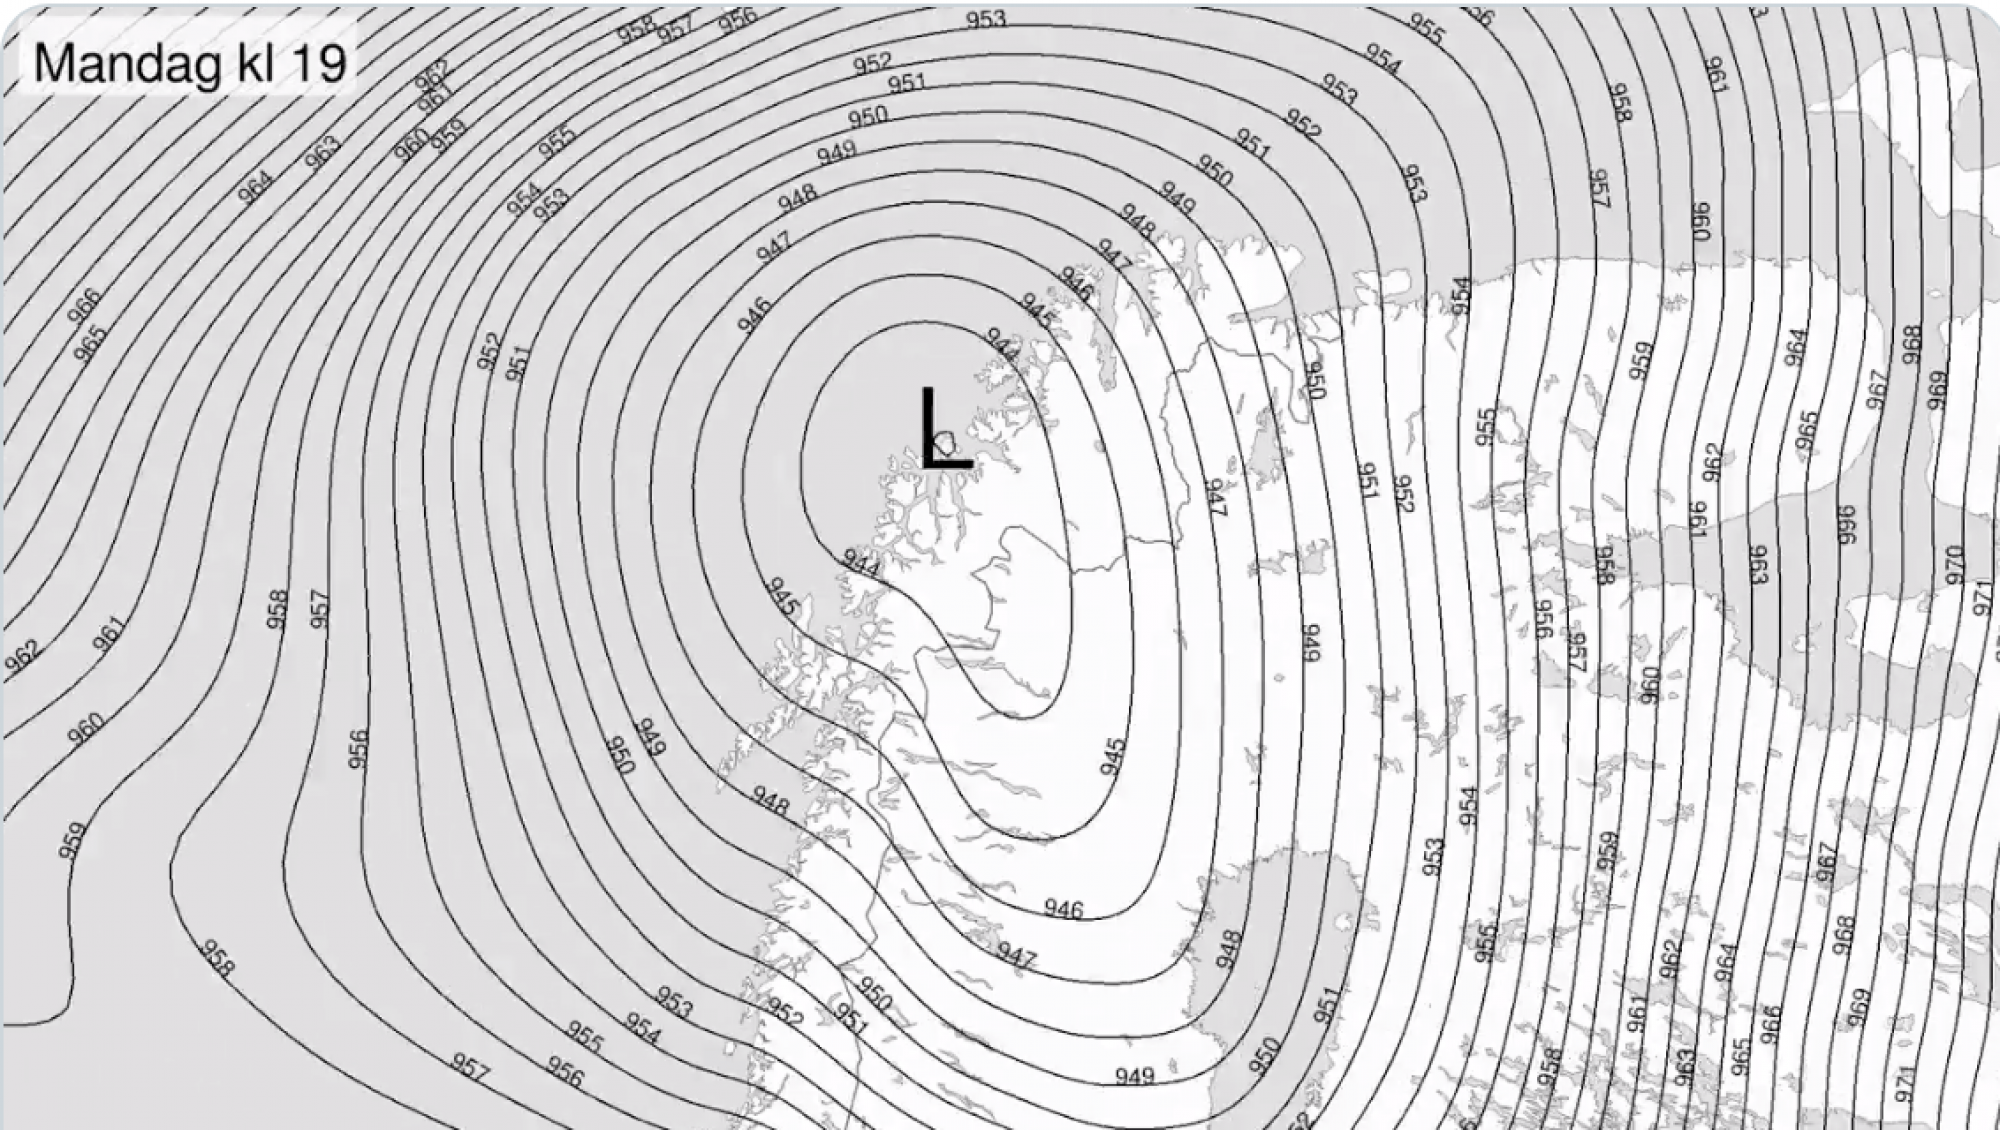 La pression atmosphérique au-dessus du nord de la Norvège le 10 février. © Meteorologene, Twitter